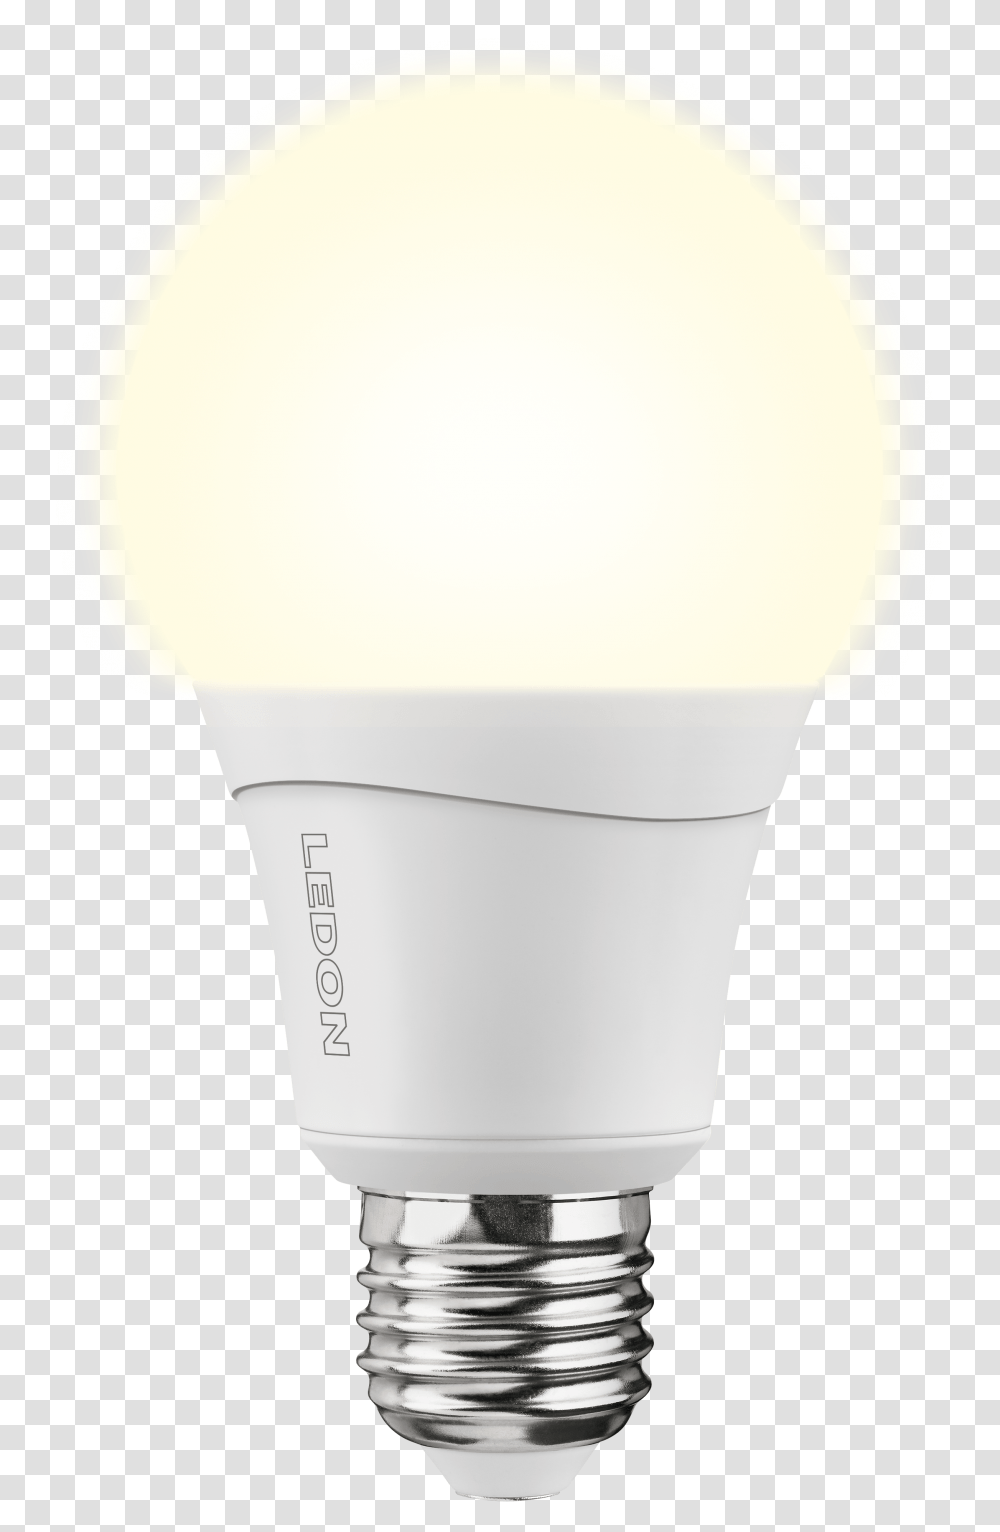 Led Lamp A66 12 5w E27 Ledon Ledon Led Lamps Led Lamp, Light, Lightbulb Transparent Png